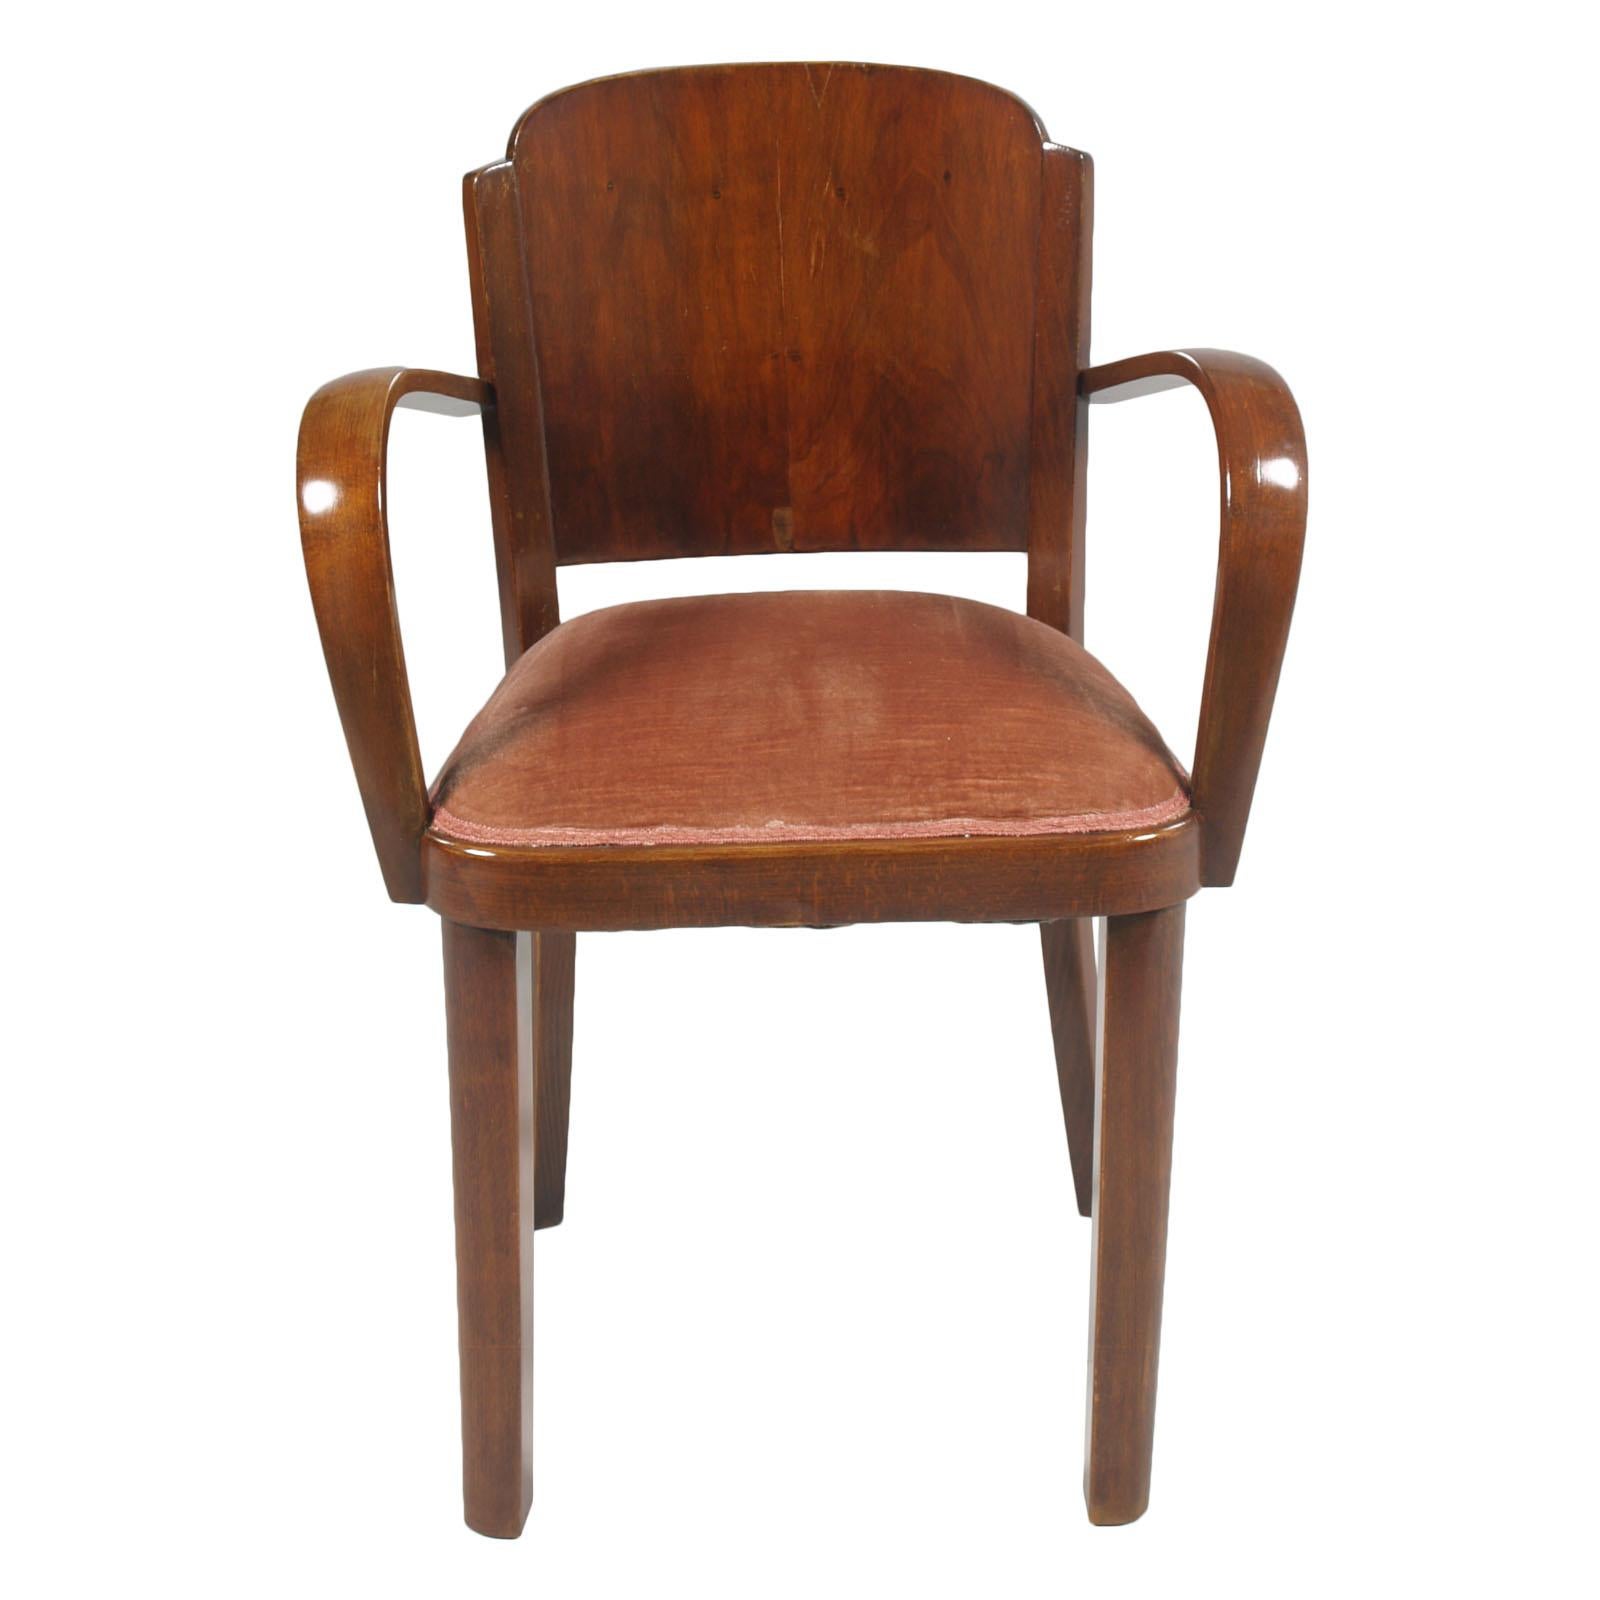 Italian 1920s Art Deco Bridge Chairs, All Original Velvet Upholstered, in Walnut For Sale 2